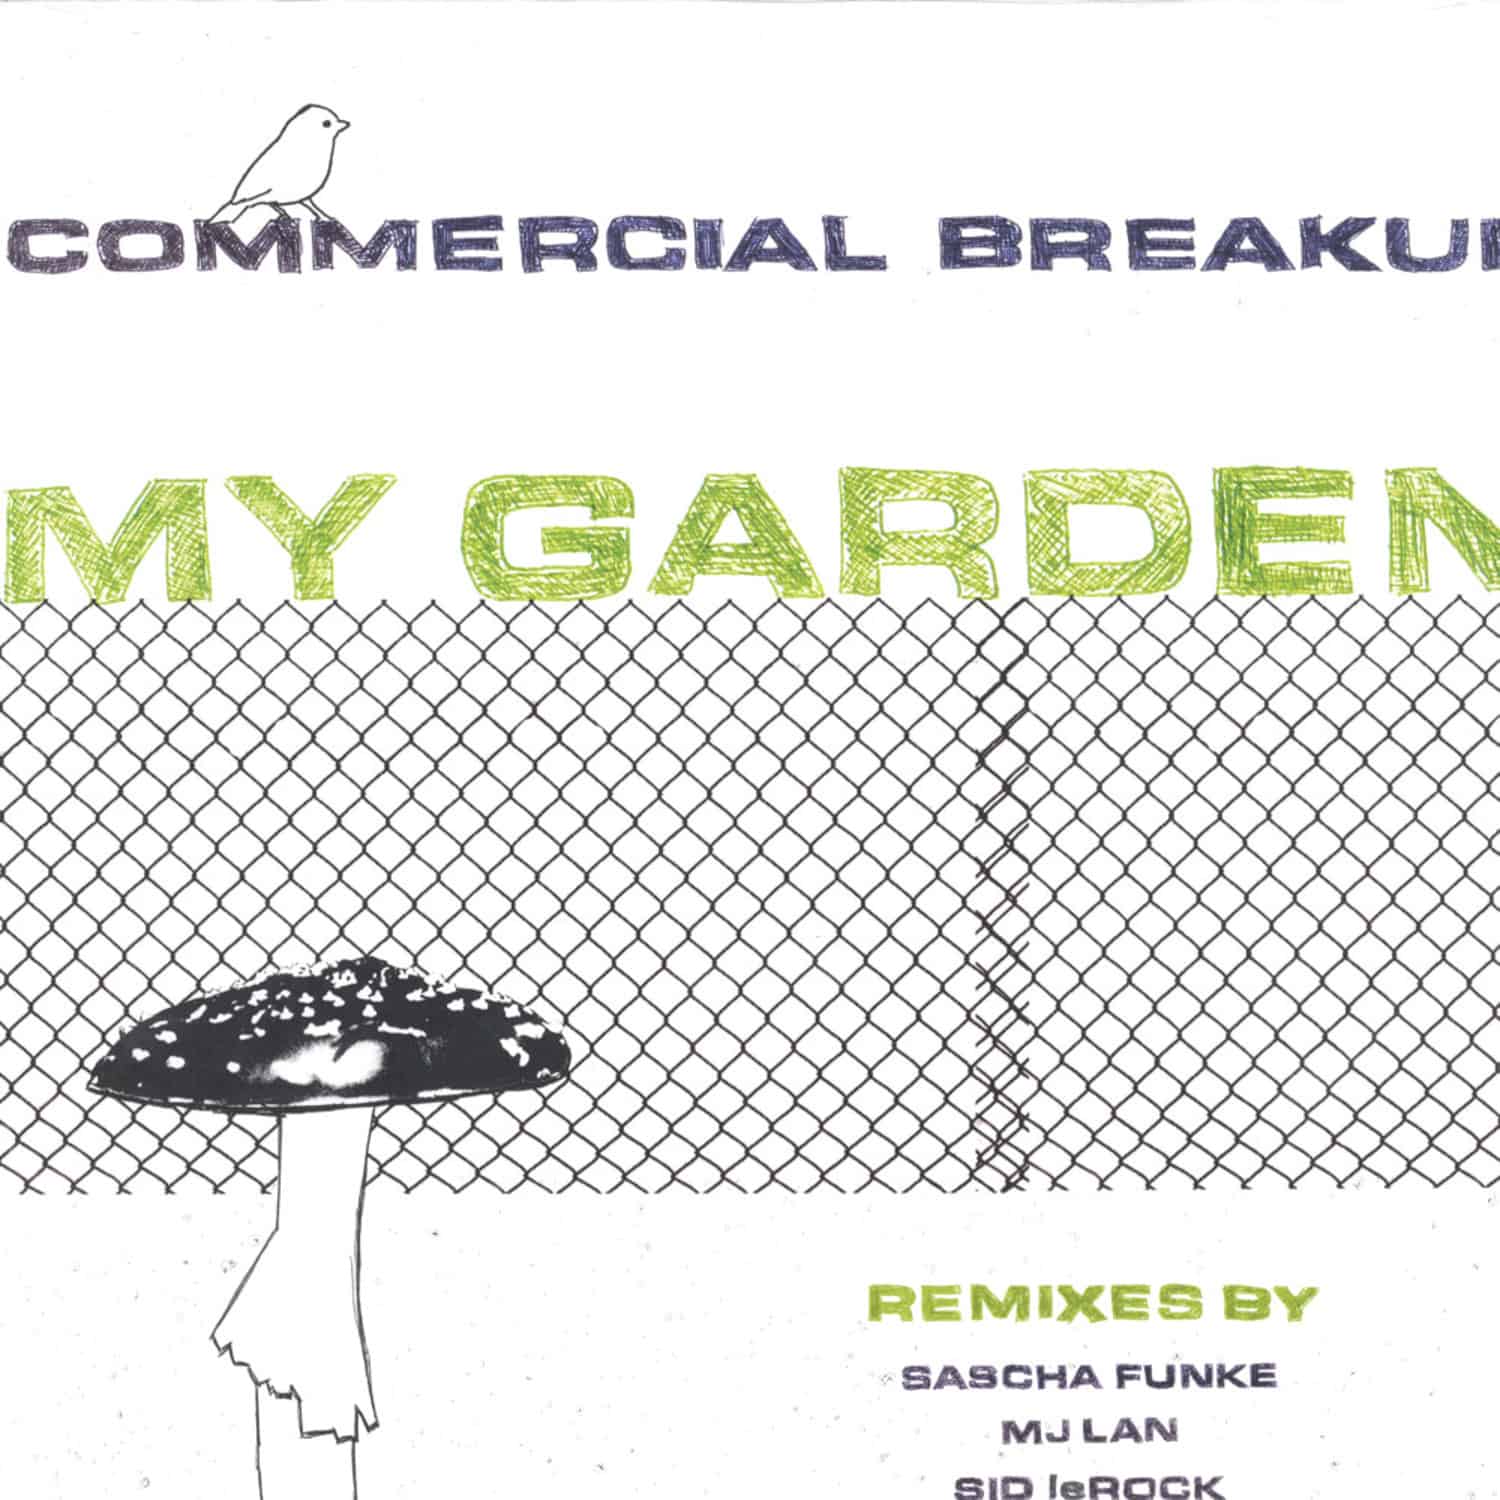 Commercial Breakup - MY GARDEN 